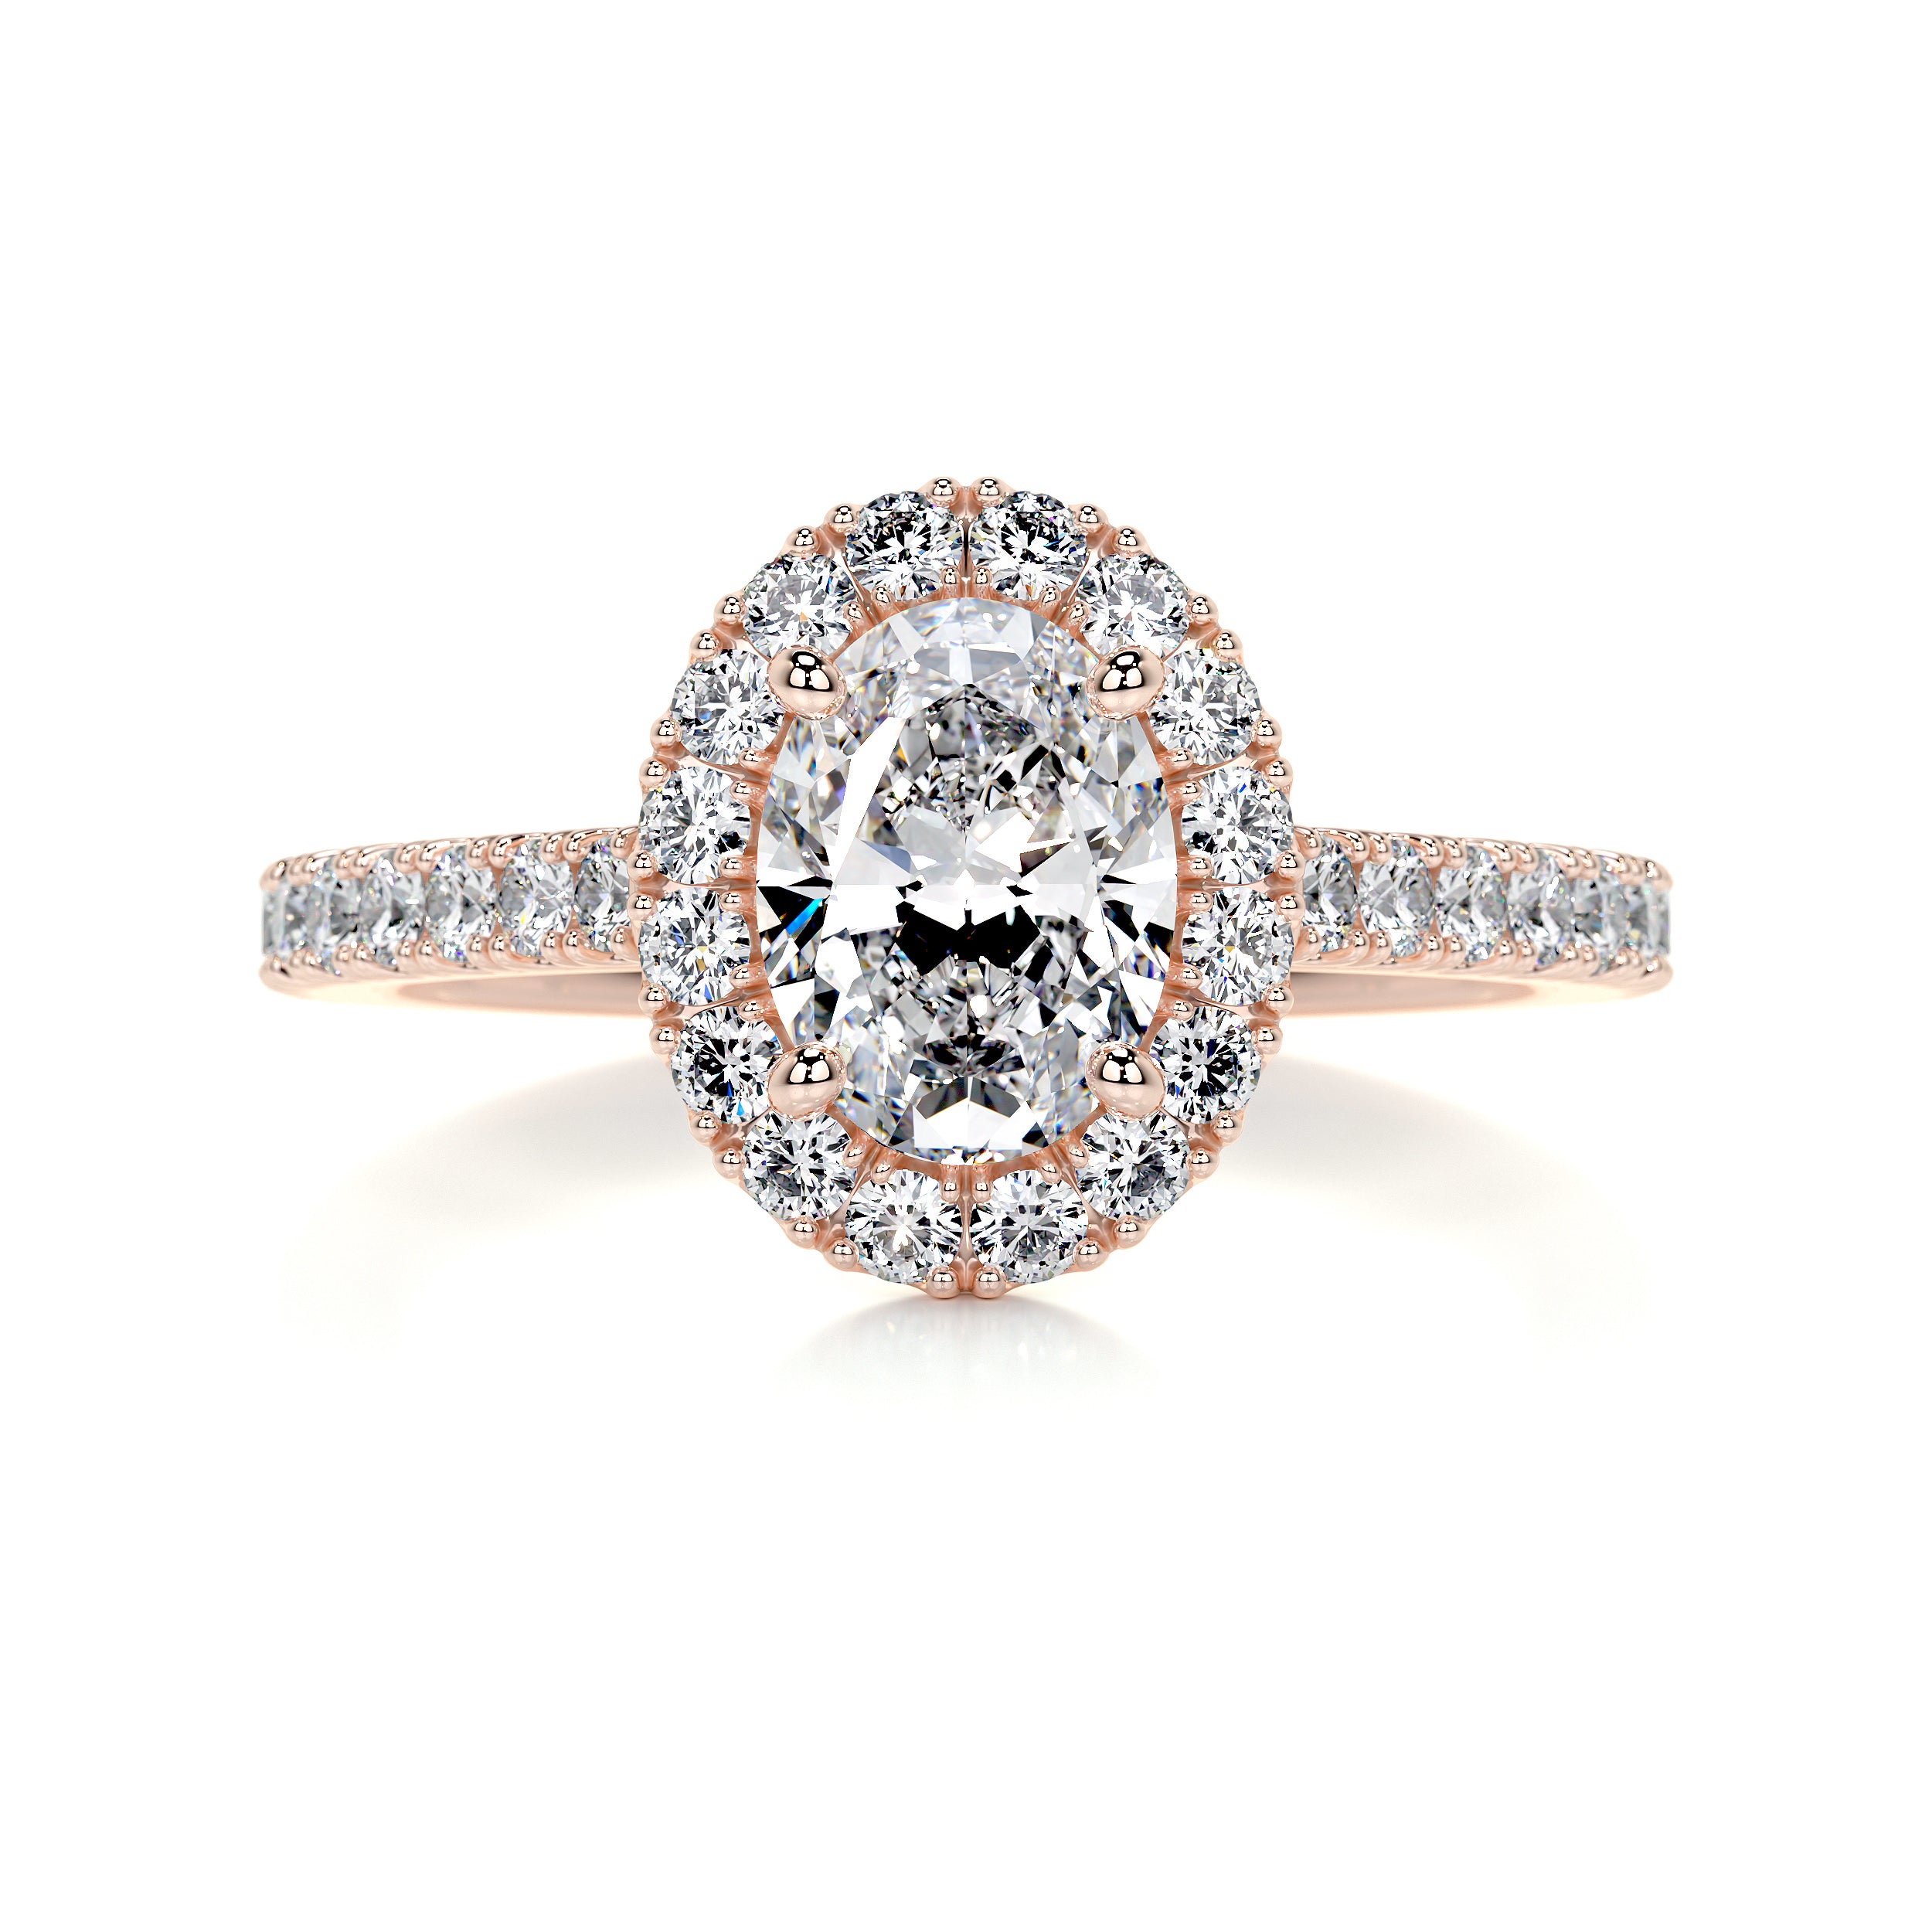 Maria Diamond Engagement Ring -14K Rose Gold